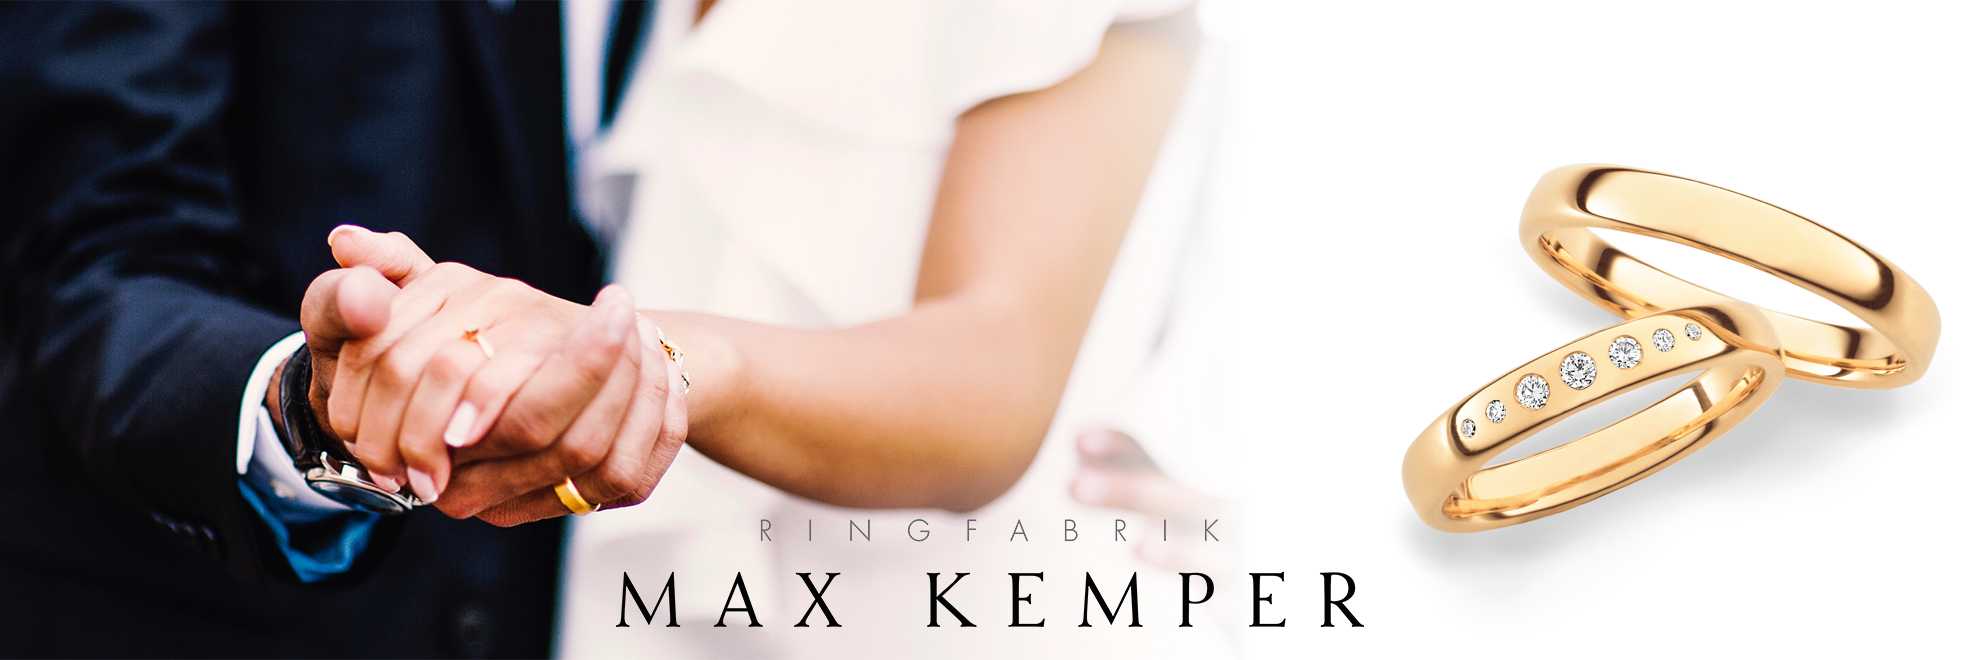 Max Kemper